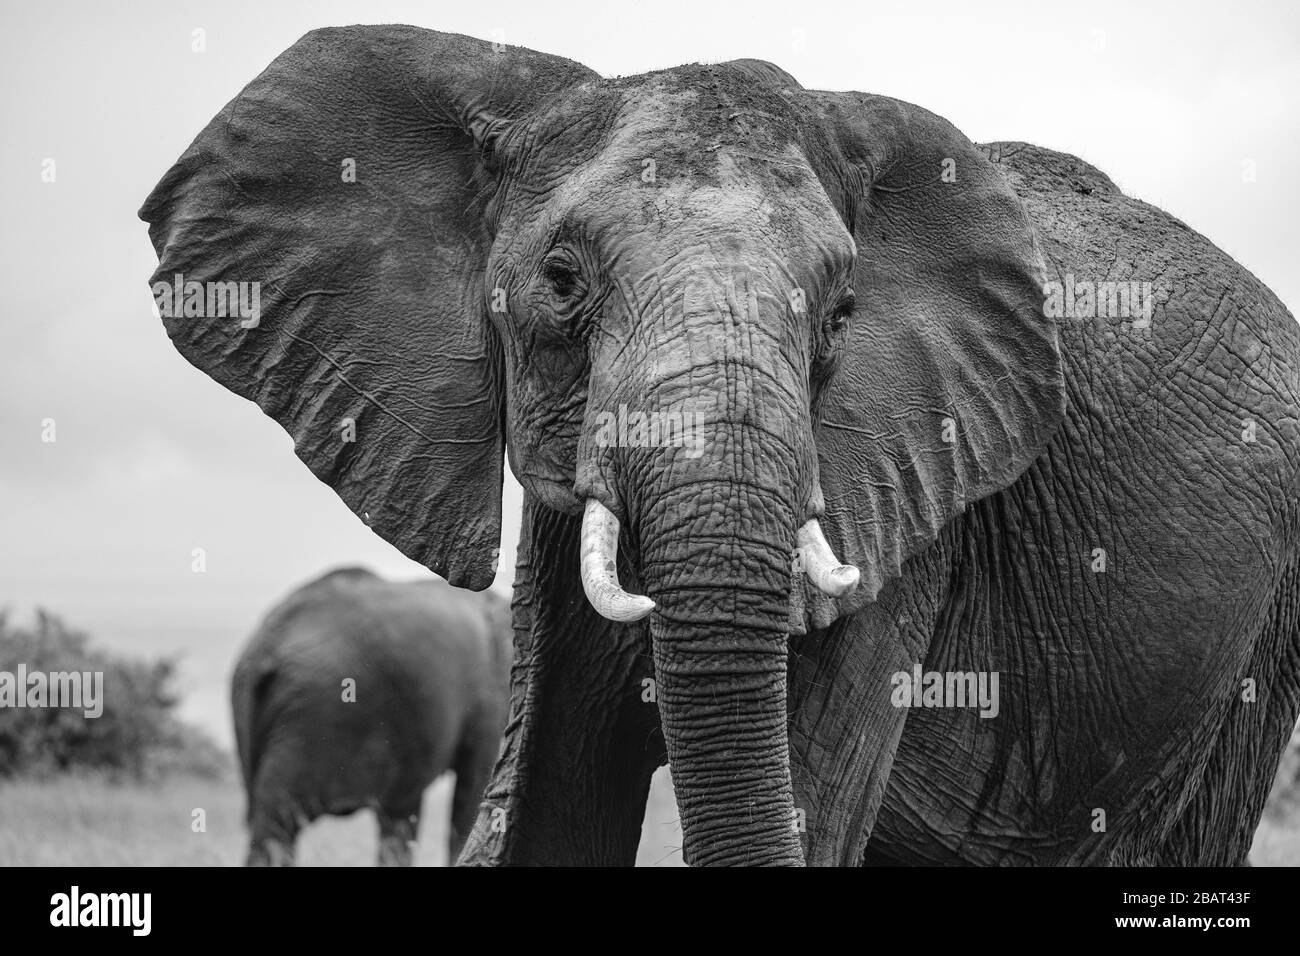 Un solo elefante de cerca en foco con otro en el fondo fuera de foco, Masai Mara, Kenya, en blanco y negro Foto de stock